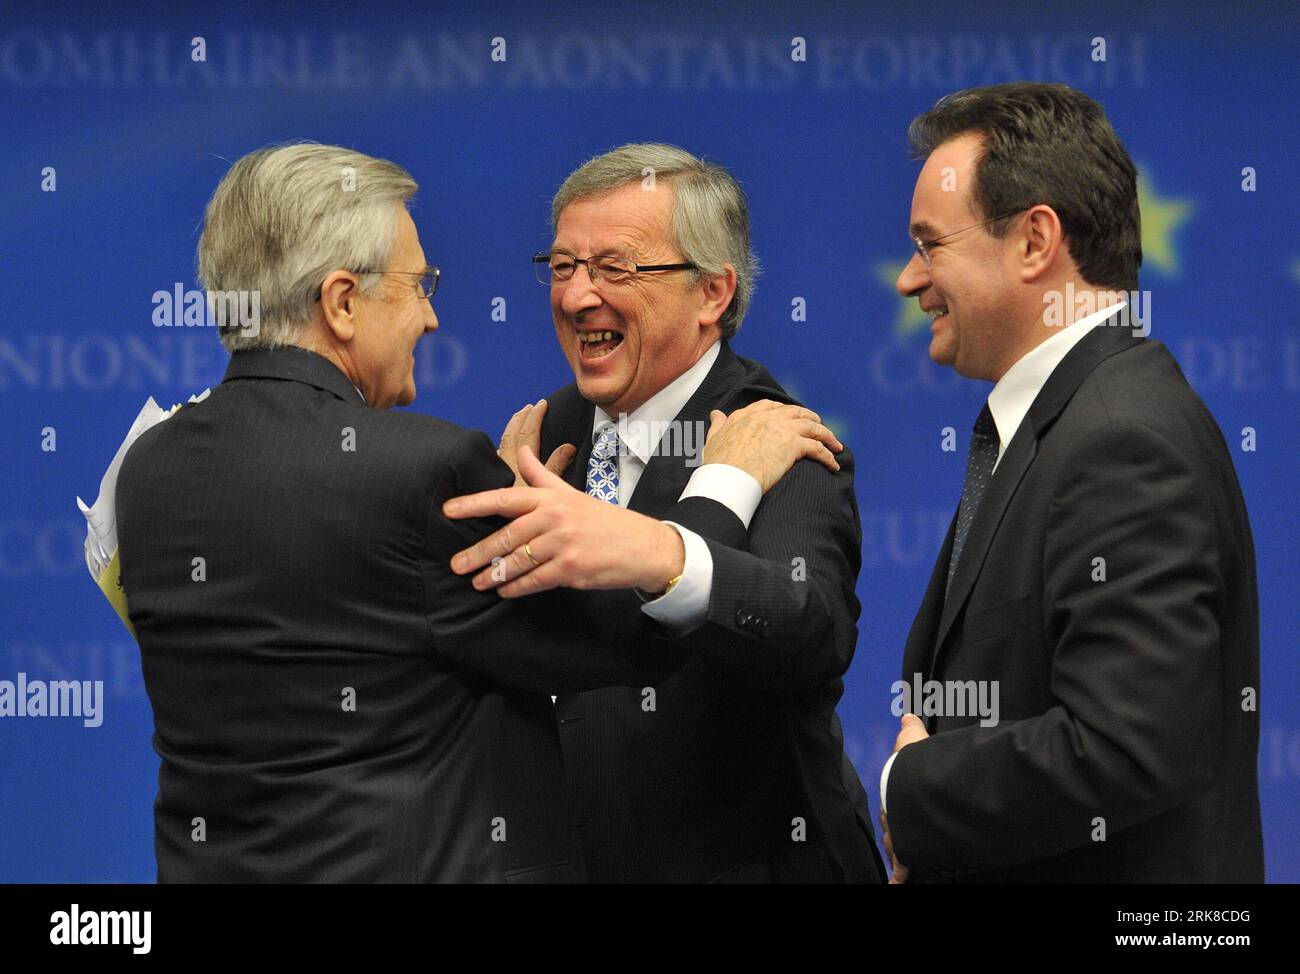 100502 -- BRUSELAS, 2 de mayo de 2010 Xinhua -- el presidente del Eurogrupo y primer ministro de Luxemburgo, Jean-Claude Juncker C, abraza al presidente del Banco Central Europeo, Jean-Claude Trichet L, mientras el ministro de Finanzas griego, George Papaconstantinou, observa en una conferencia de prensa después de la reunión de ministros de Finanzas del Eurogrupo en Bruselas, capital de Bélgica, el 2 de mayo de 2010. Los ministros de Finanzas de la eurozona acordaron el domingo activar el paquete de ayuda para Grecia, ofreciendo junto con el Fondo Monetario Internacional el FMI 110 millones de euros al país cargado de deuda en los próximos tres años. Xinhua/Wu Wei zw 1BELGIUM-BRUSELAS-GRE Foto de stock